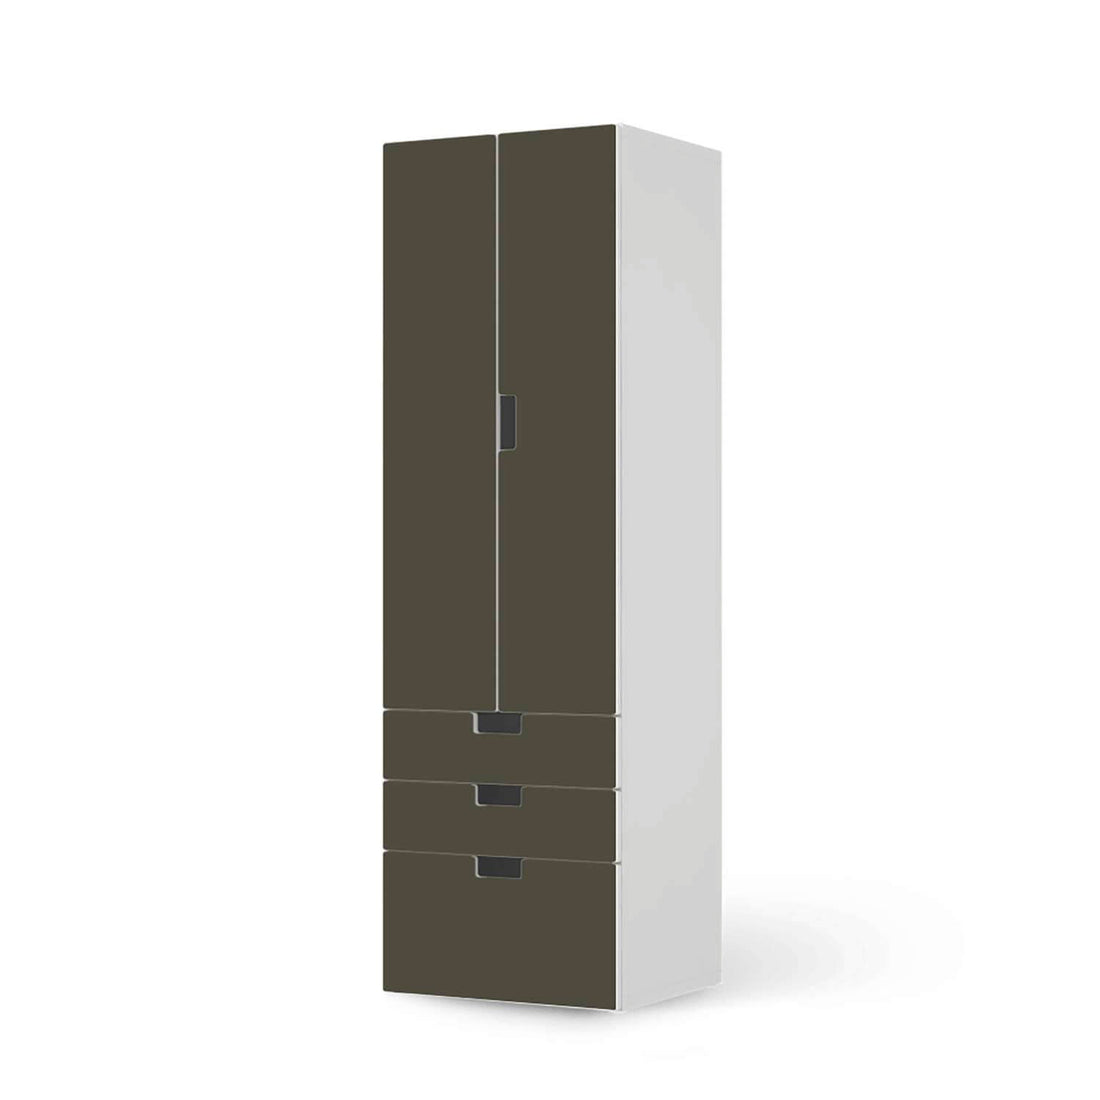 Klebefolie Braungrau Dark - IKEA Stuva kombiniert - 3 Schubladen und 2 große Türen (Kombination 1)  - weiss